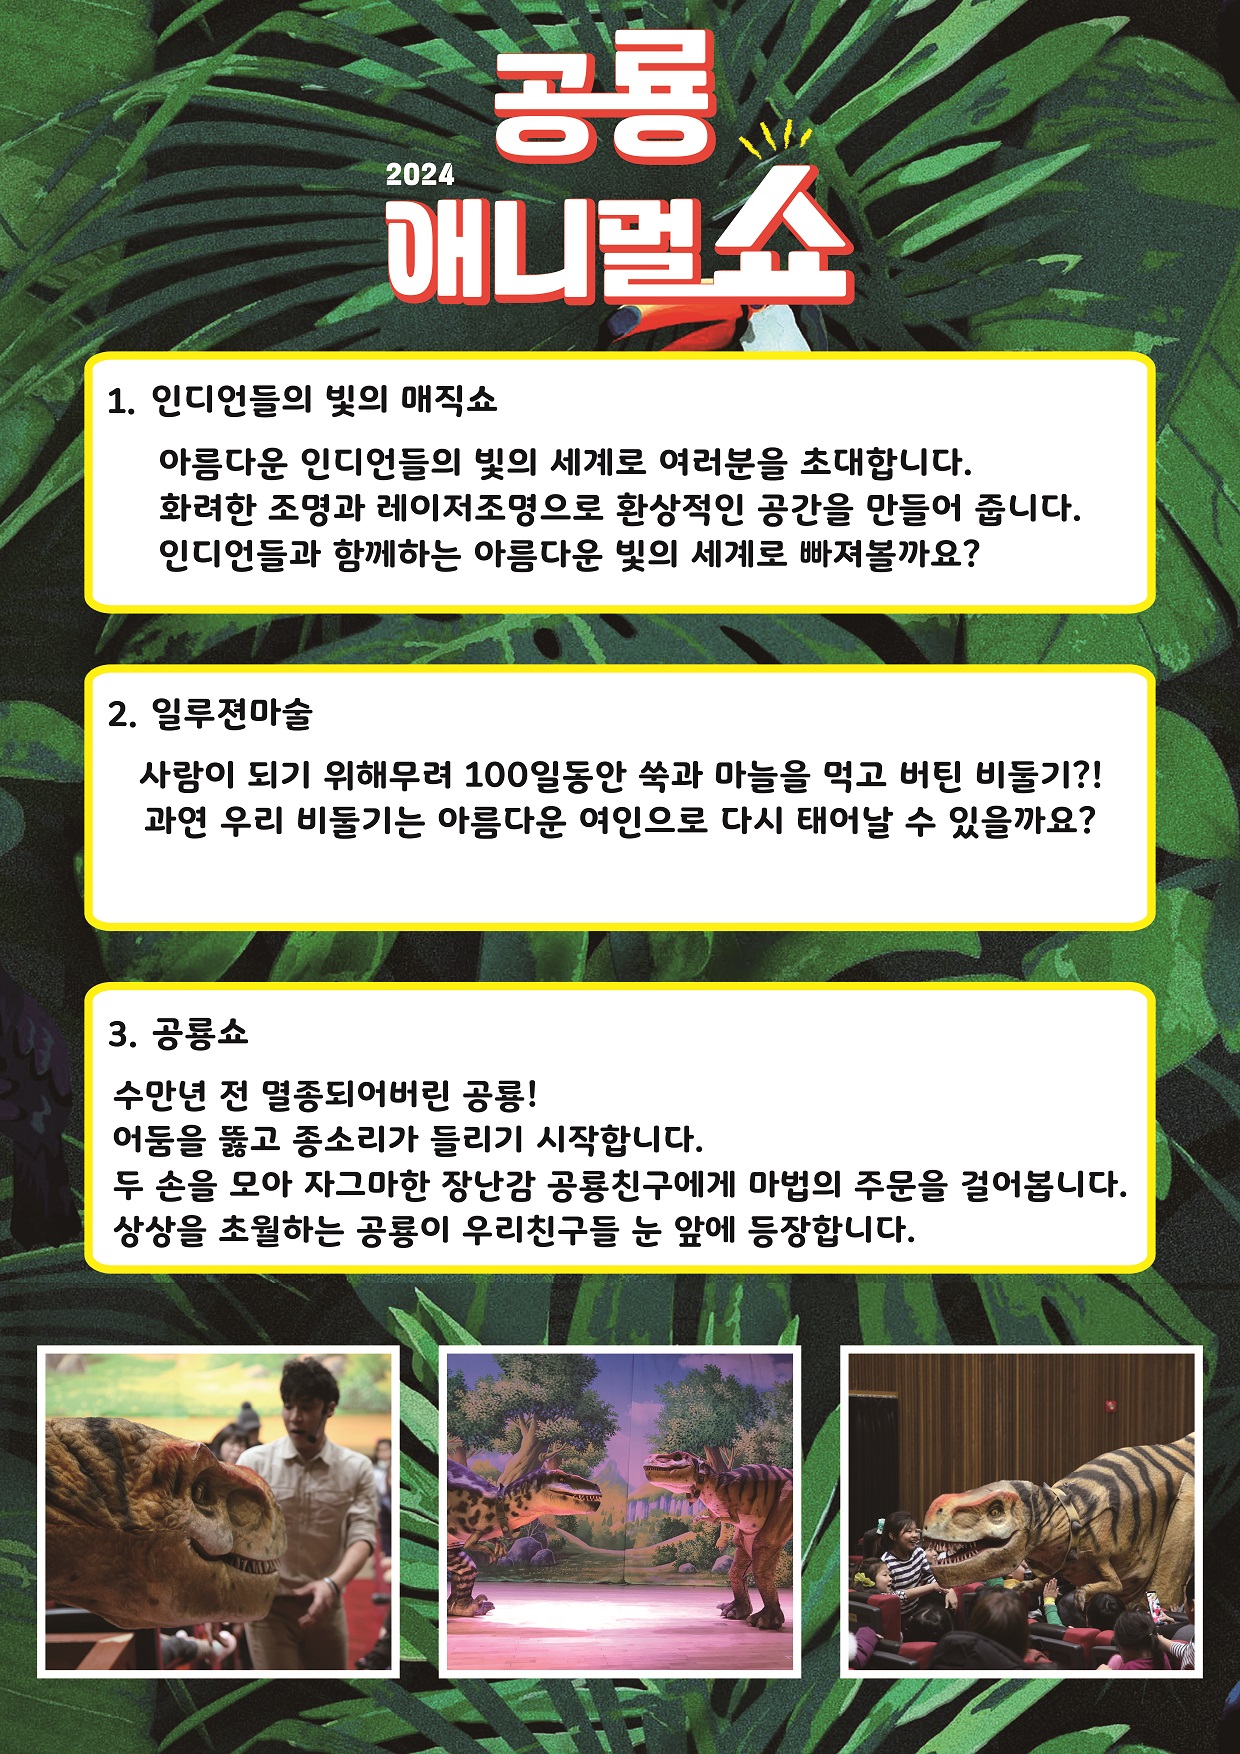 김제시장 교육문화과_공룡 애니멀 쇼 공연 전단지 뒷면 1부